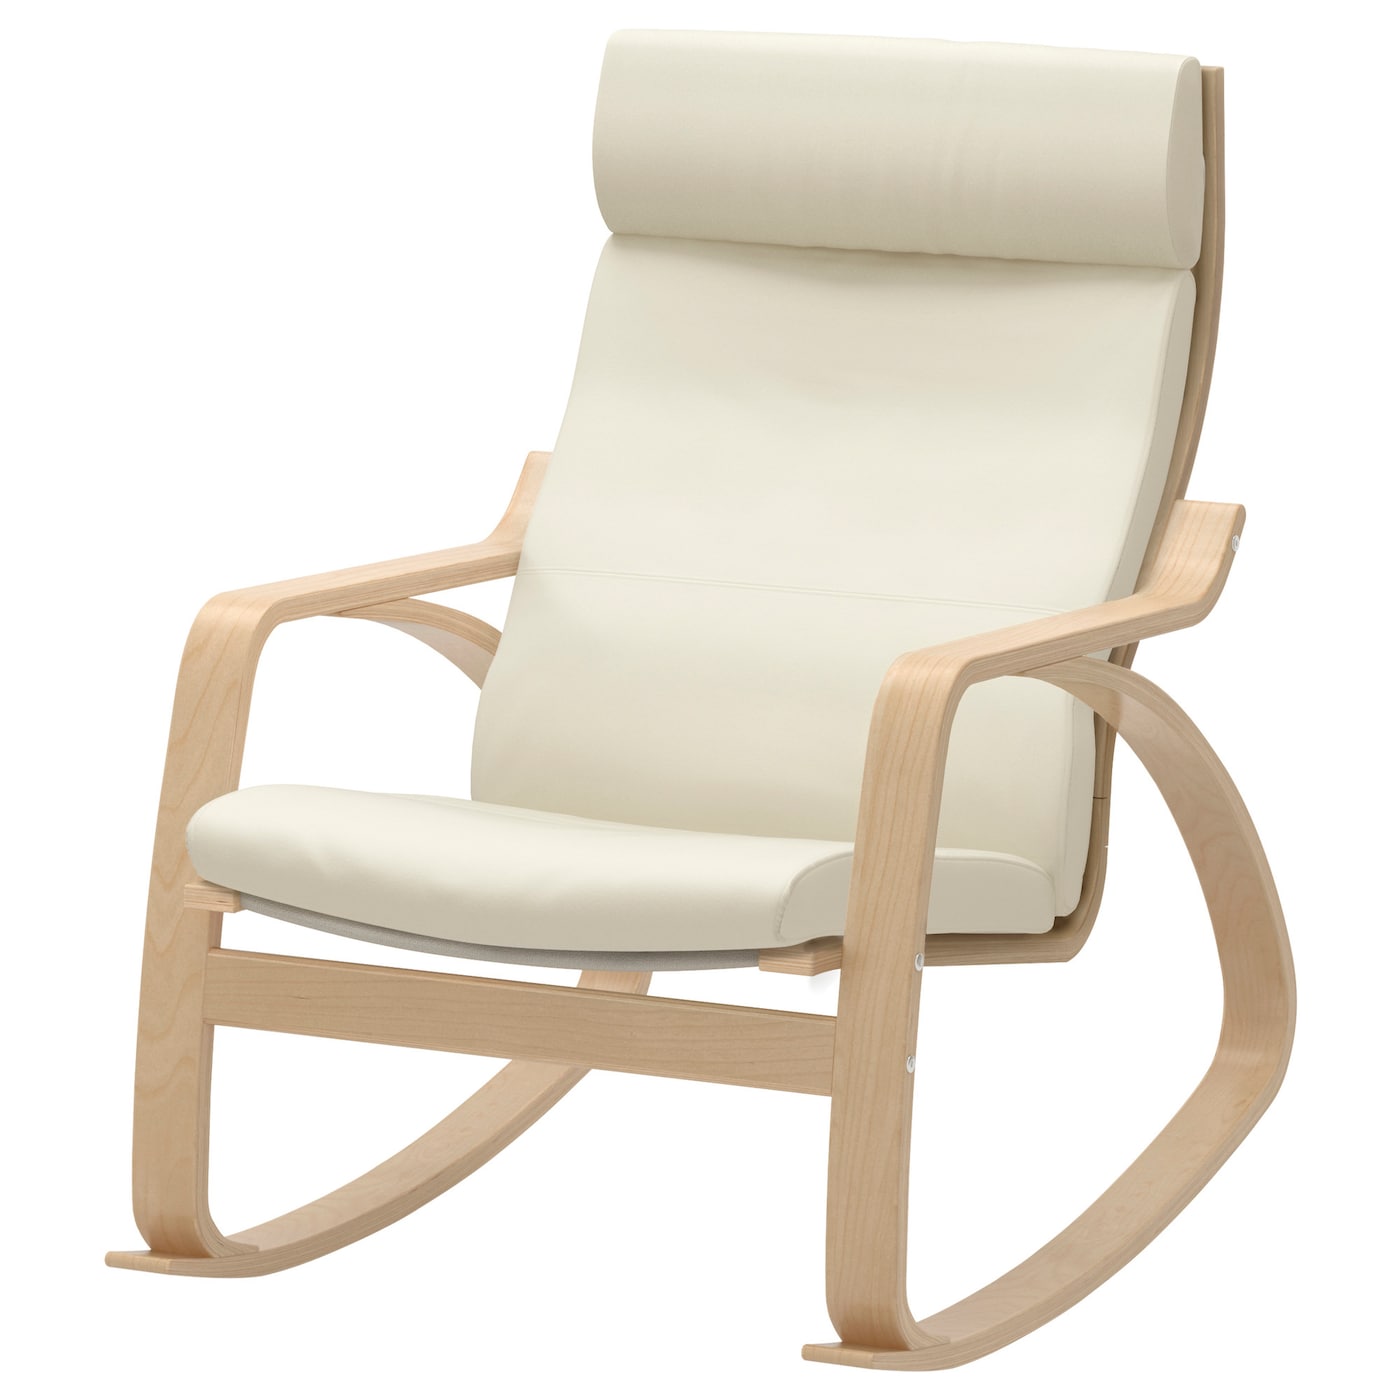 ПОЭНГ Кресло-качалка, березовый шпон/Глянец натуральный белый POÄNG IKEA кресло качалка tc 65x61x74 см белый натуральный